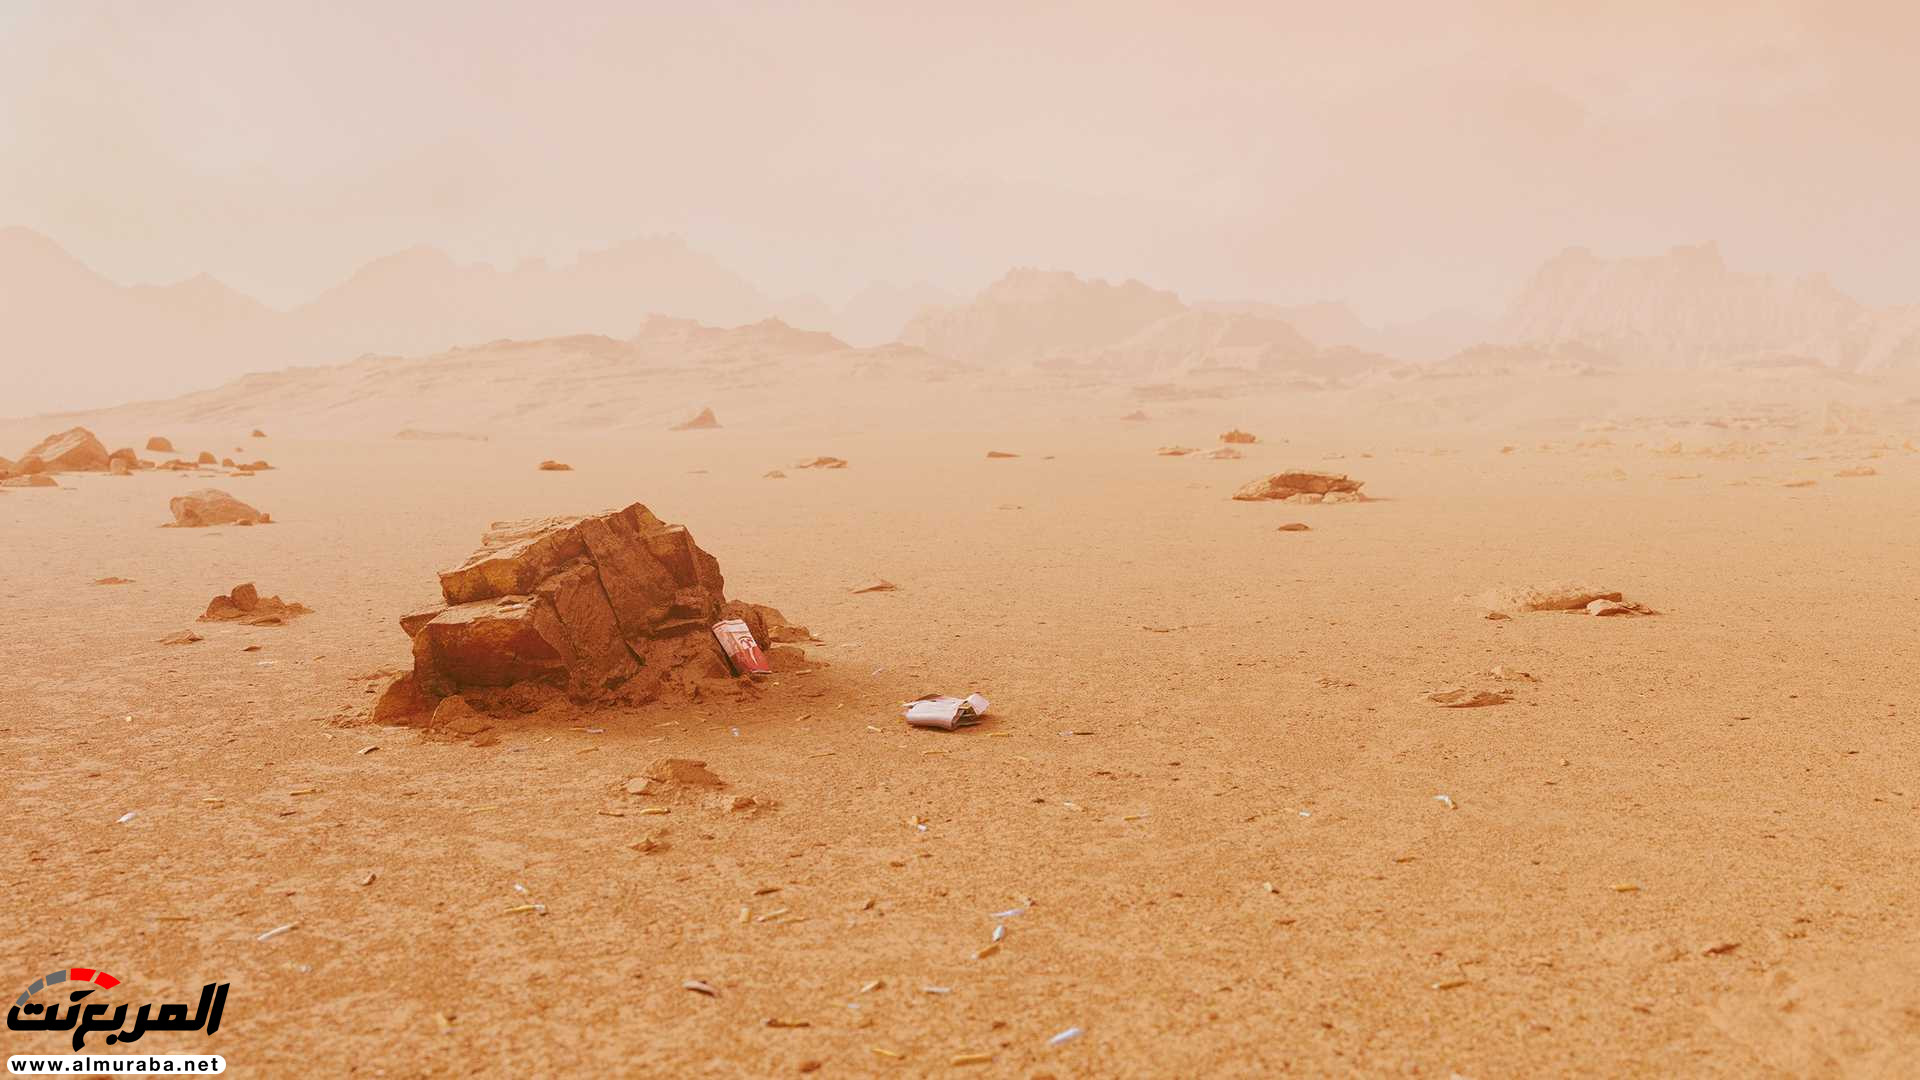 تيسلا رودستر وصلت إلى المريخ في صور تخيلية 19